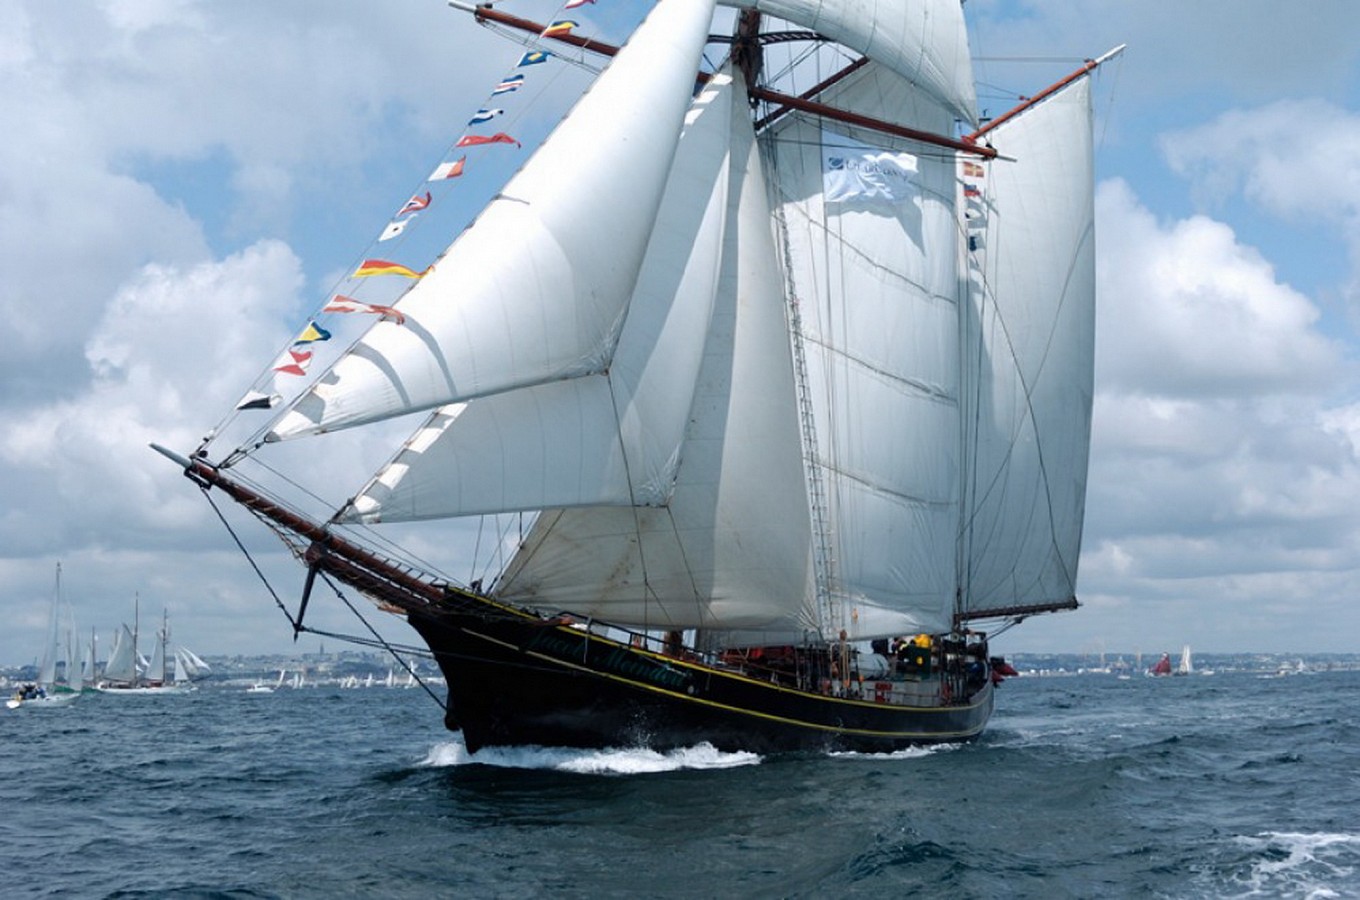 89' topsail schooner 'Jacob Meindert'